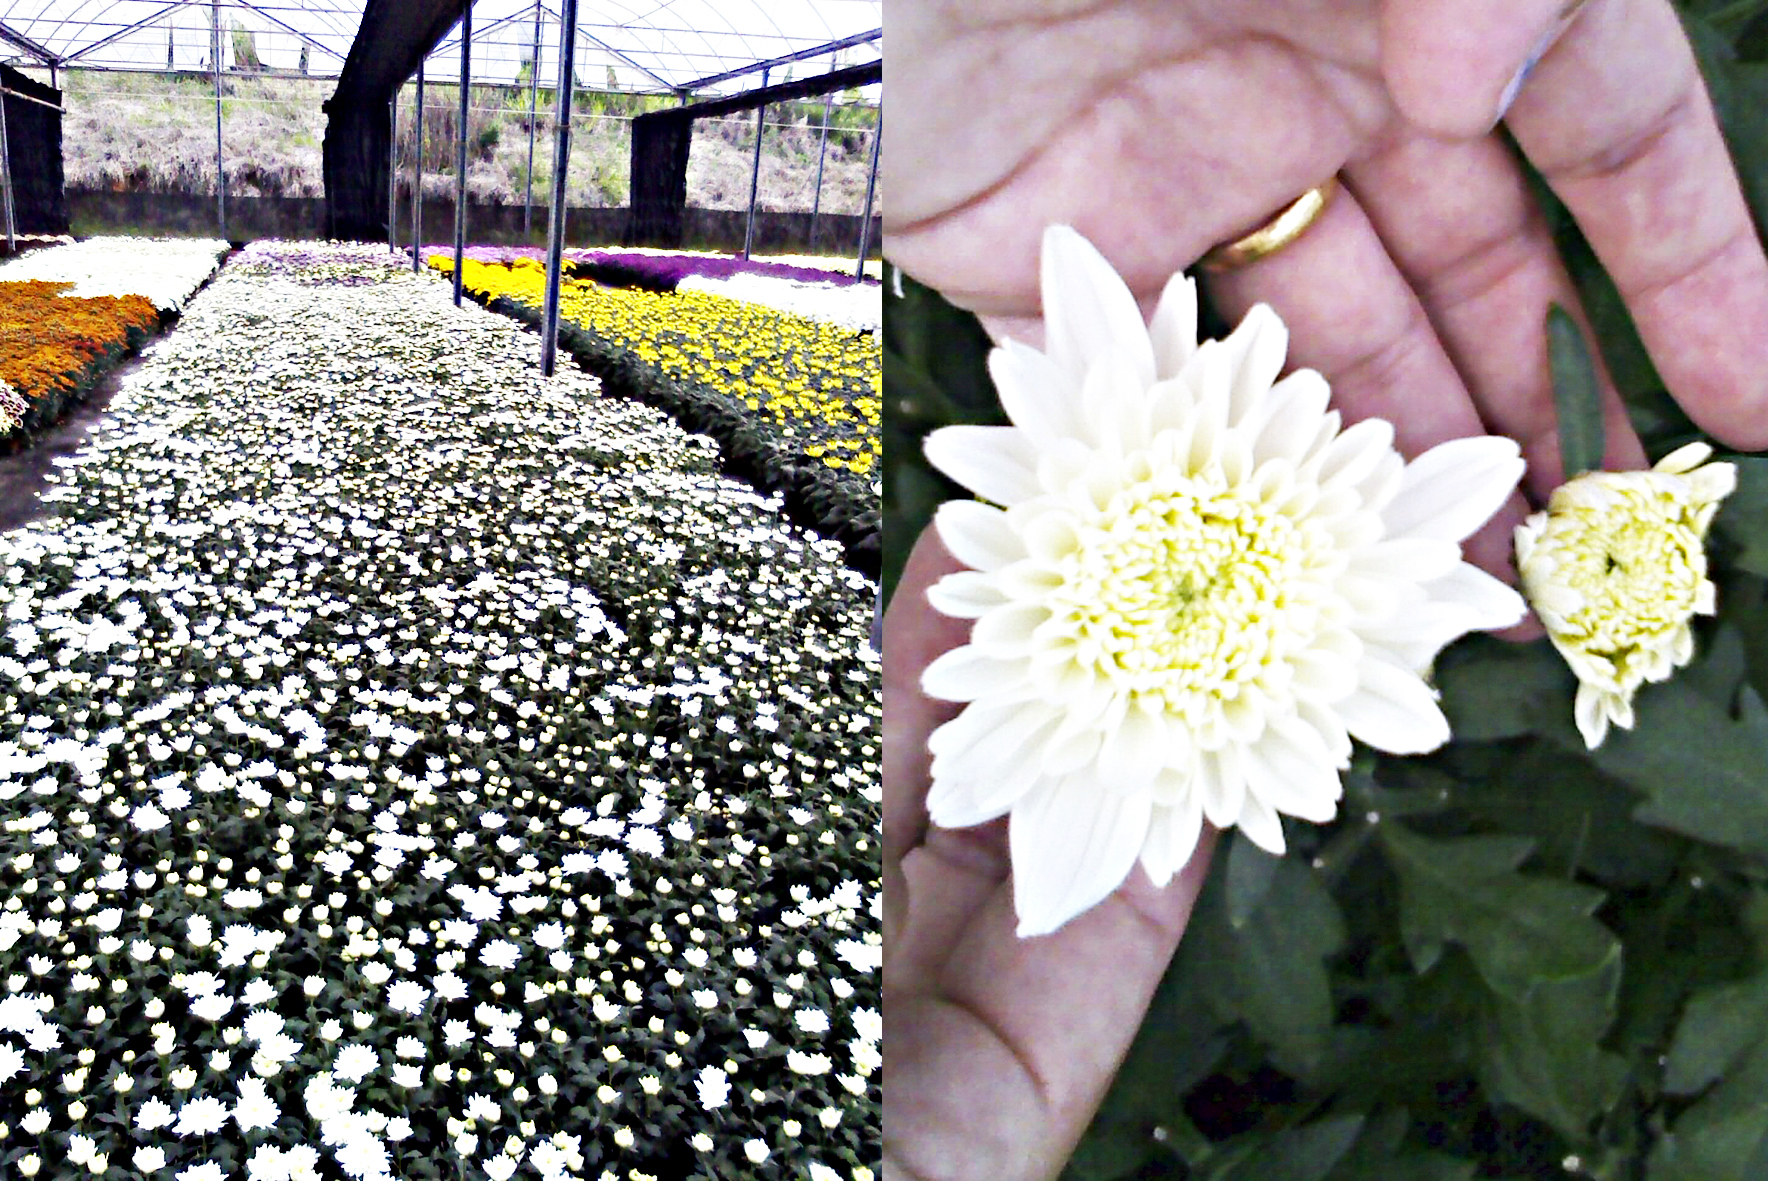 <p><b><p>Crisântemo variedade ‘Puritan’ infectado pelo CSVd. À esquerda, observam-se flores em canteiro de produção comercial, em Holambra, SP; à direita, pode-se observar a diferença entre uma flor considerada normal, em comparação com uma flor retirada de uma planta infectada pelo CSVd, apresentando tamanho reduzido, inadequada para a comercialização.</p></b></p><p>Autor: Danielle Gobatto</p>